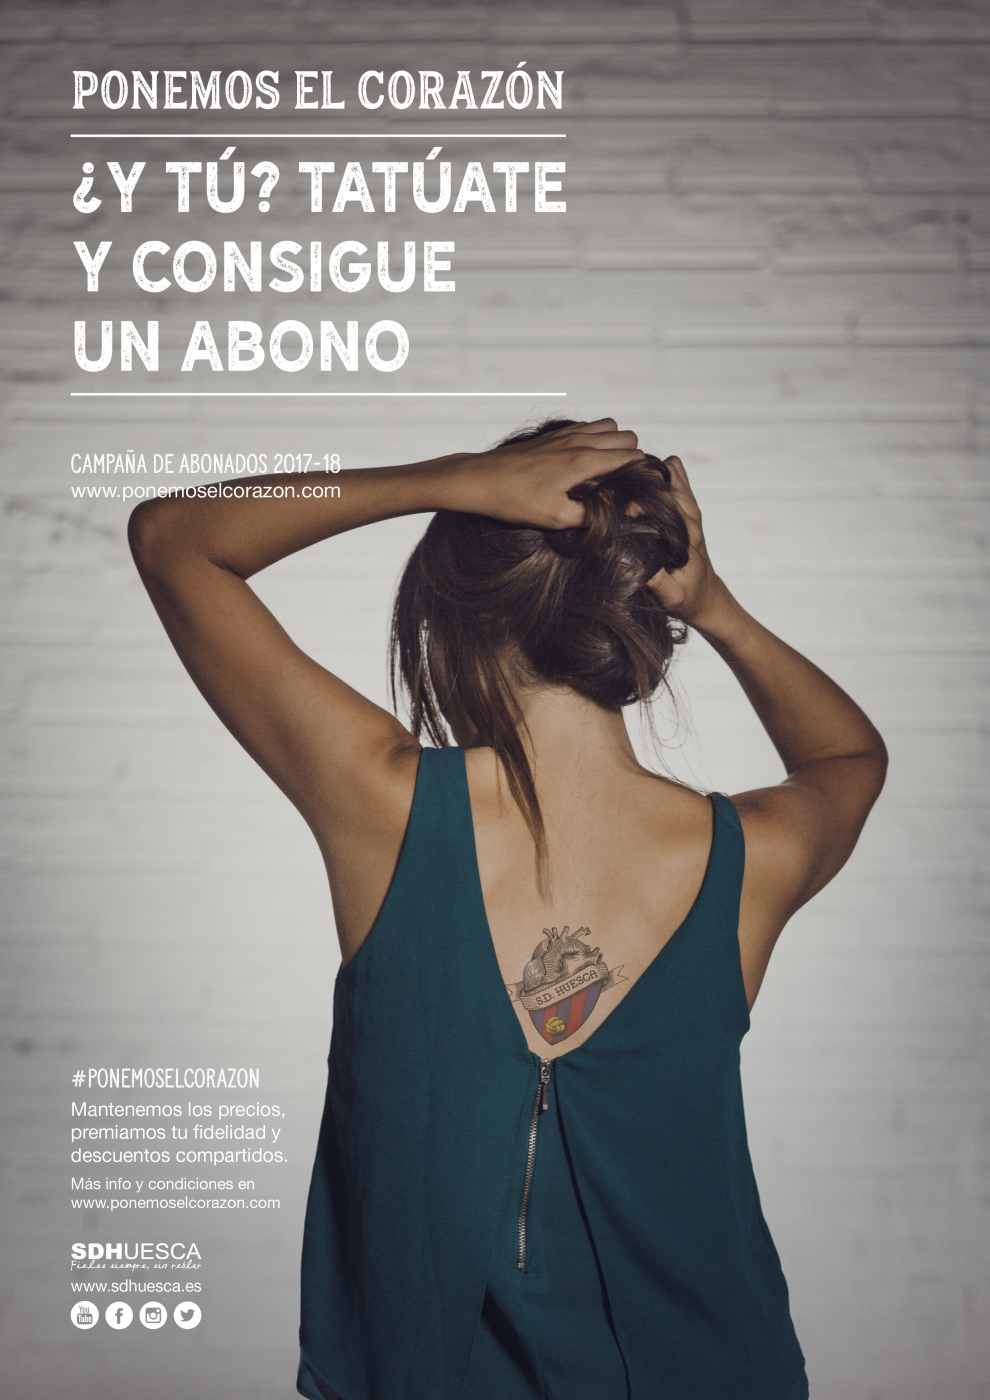 Imagen de la campaña 'Ponemos el corazón' del Huesca.